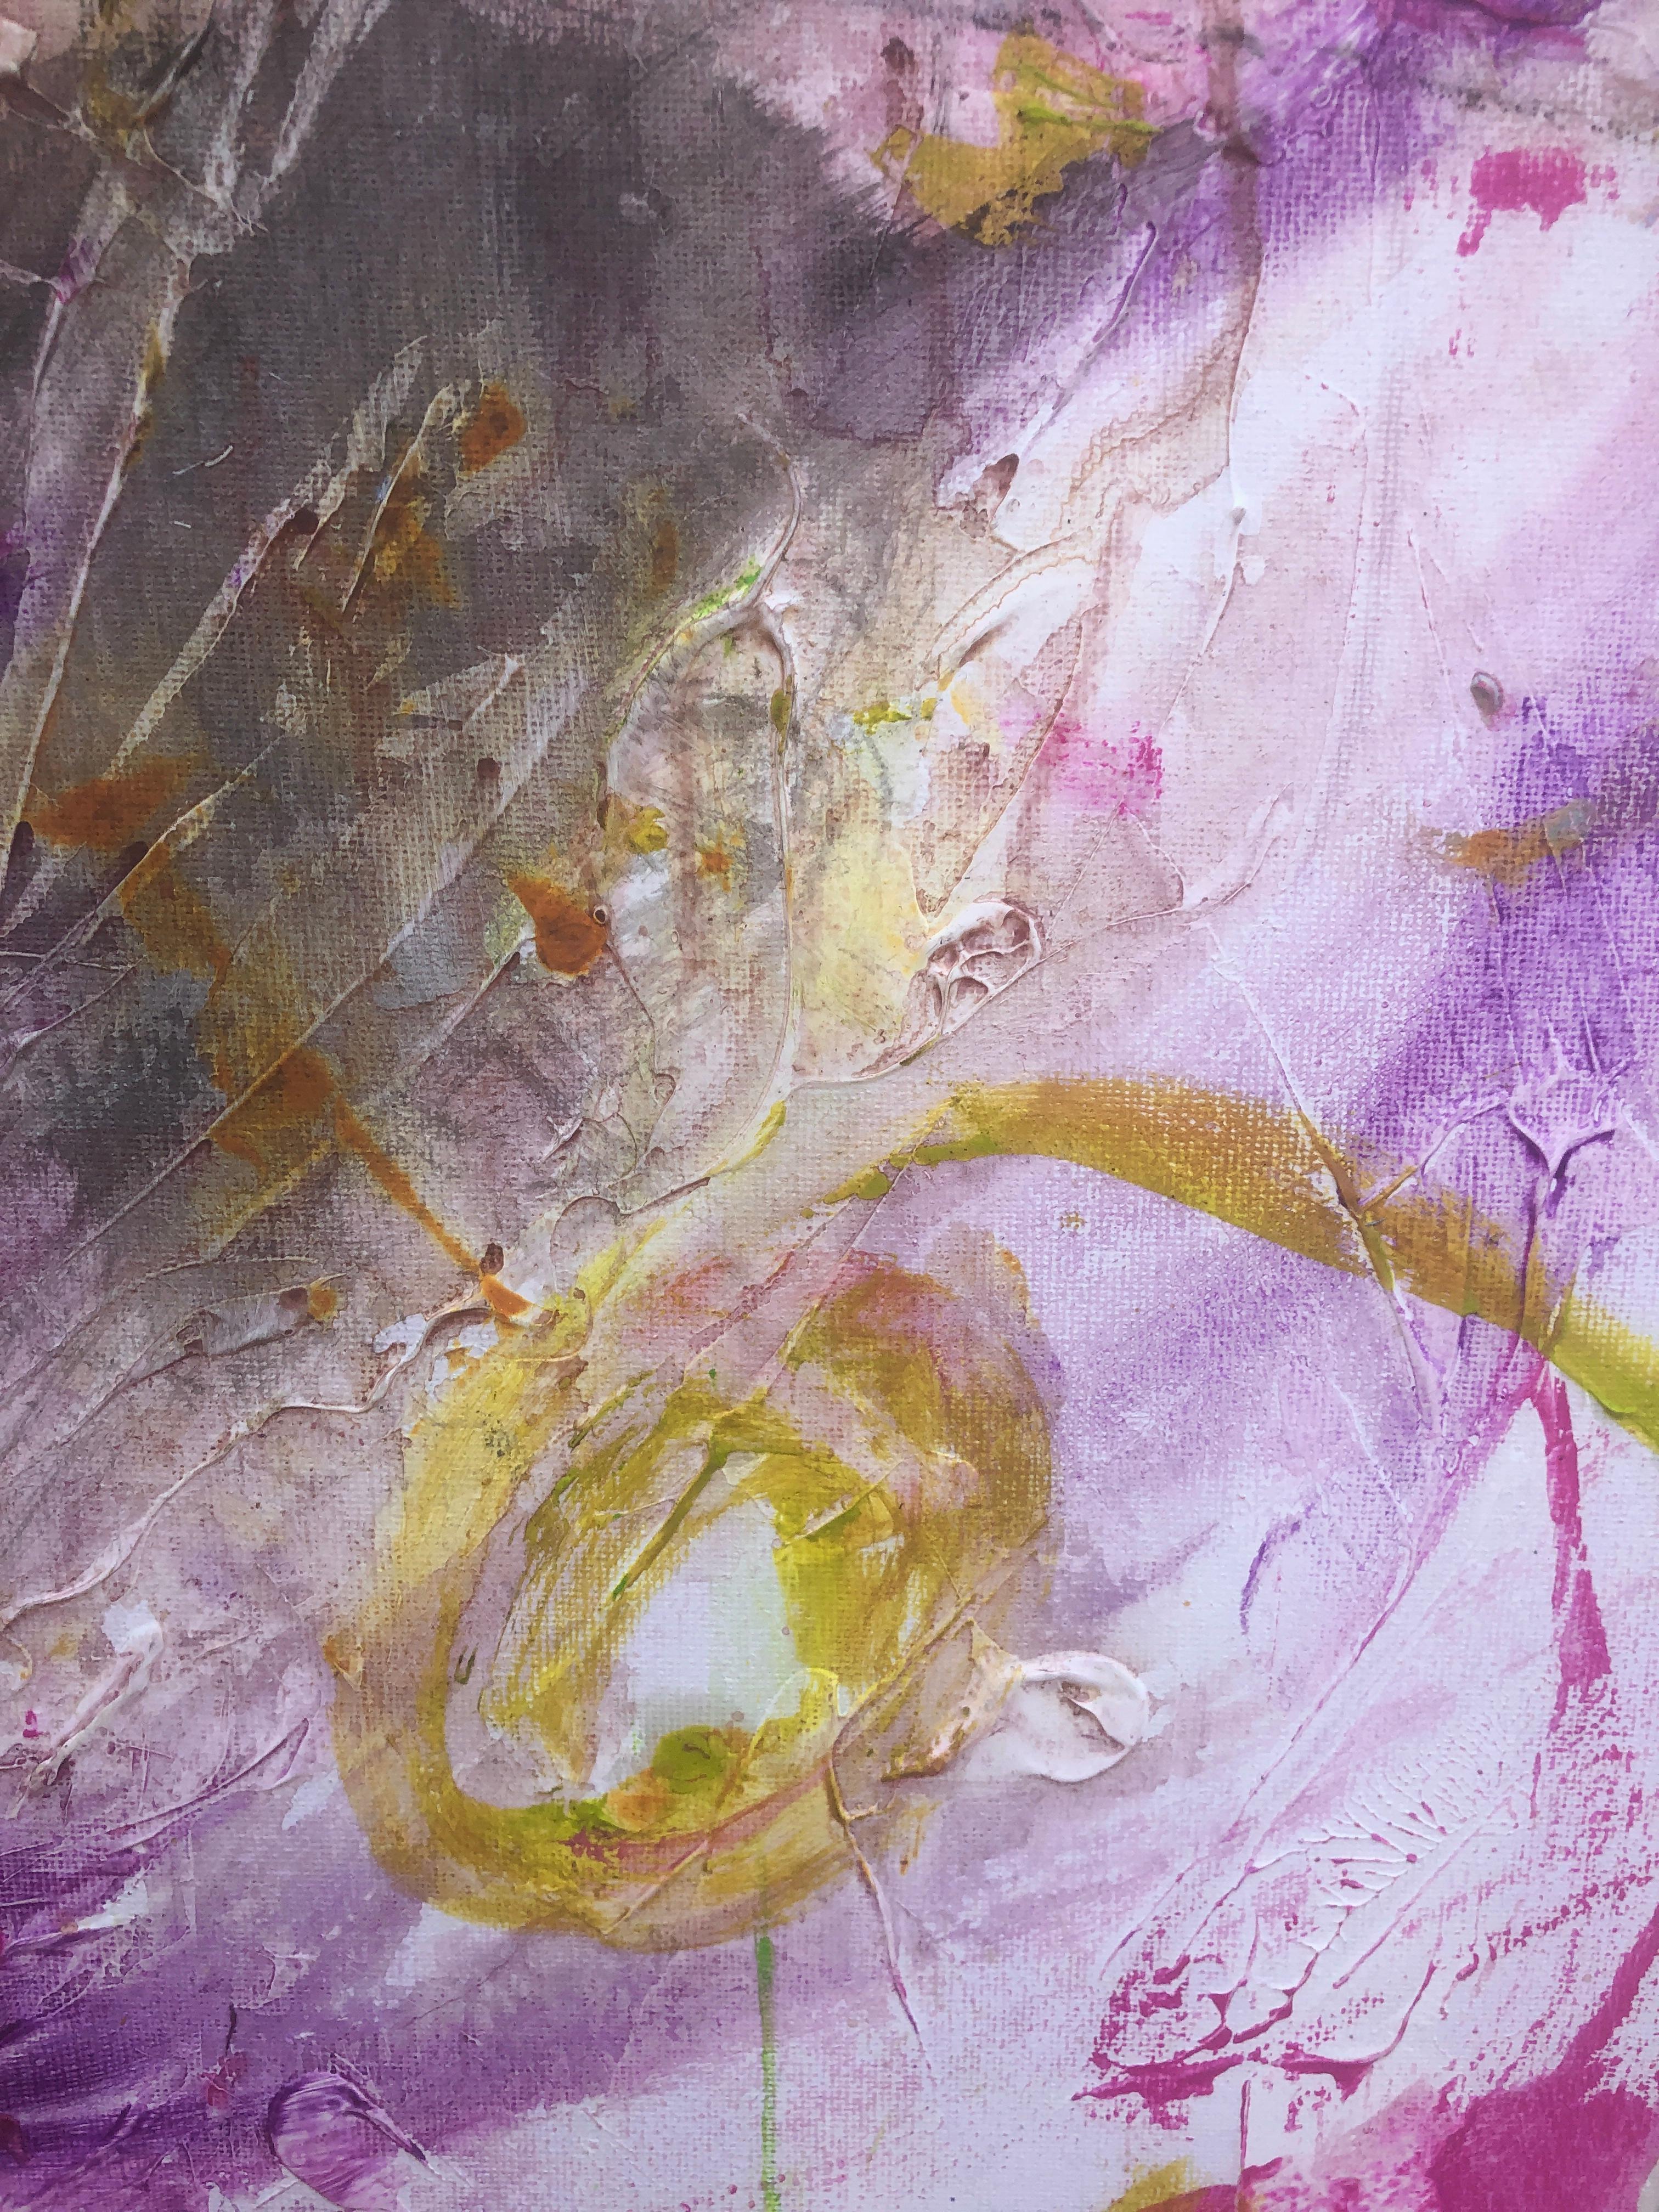 Abstrakt-expressionistisches Gemälde in Öl auf Leinwand mit Farbexplosion (Abstrakter Expressionismus), Painting, von Nerea Caos